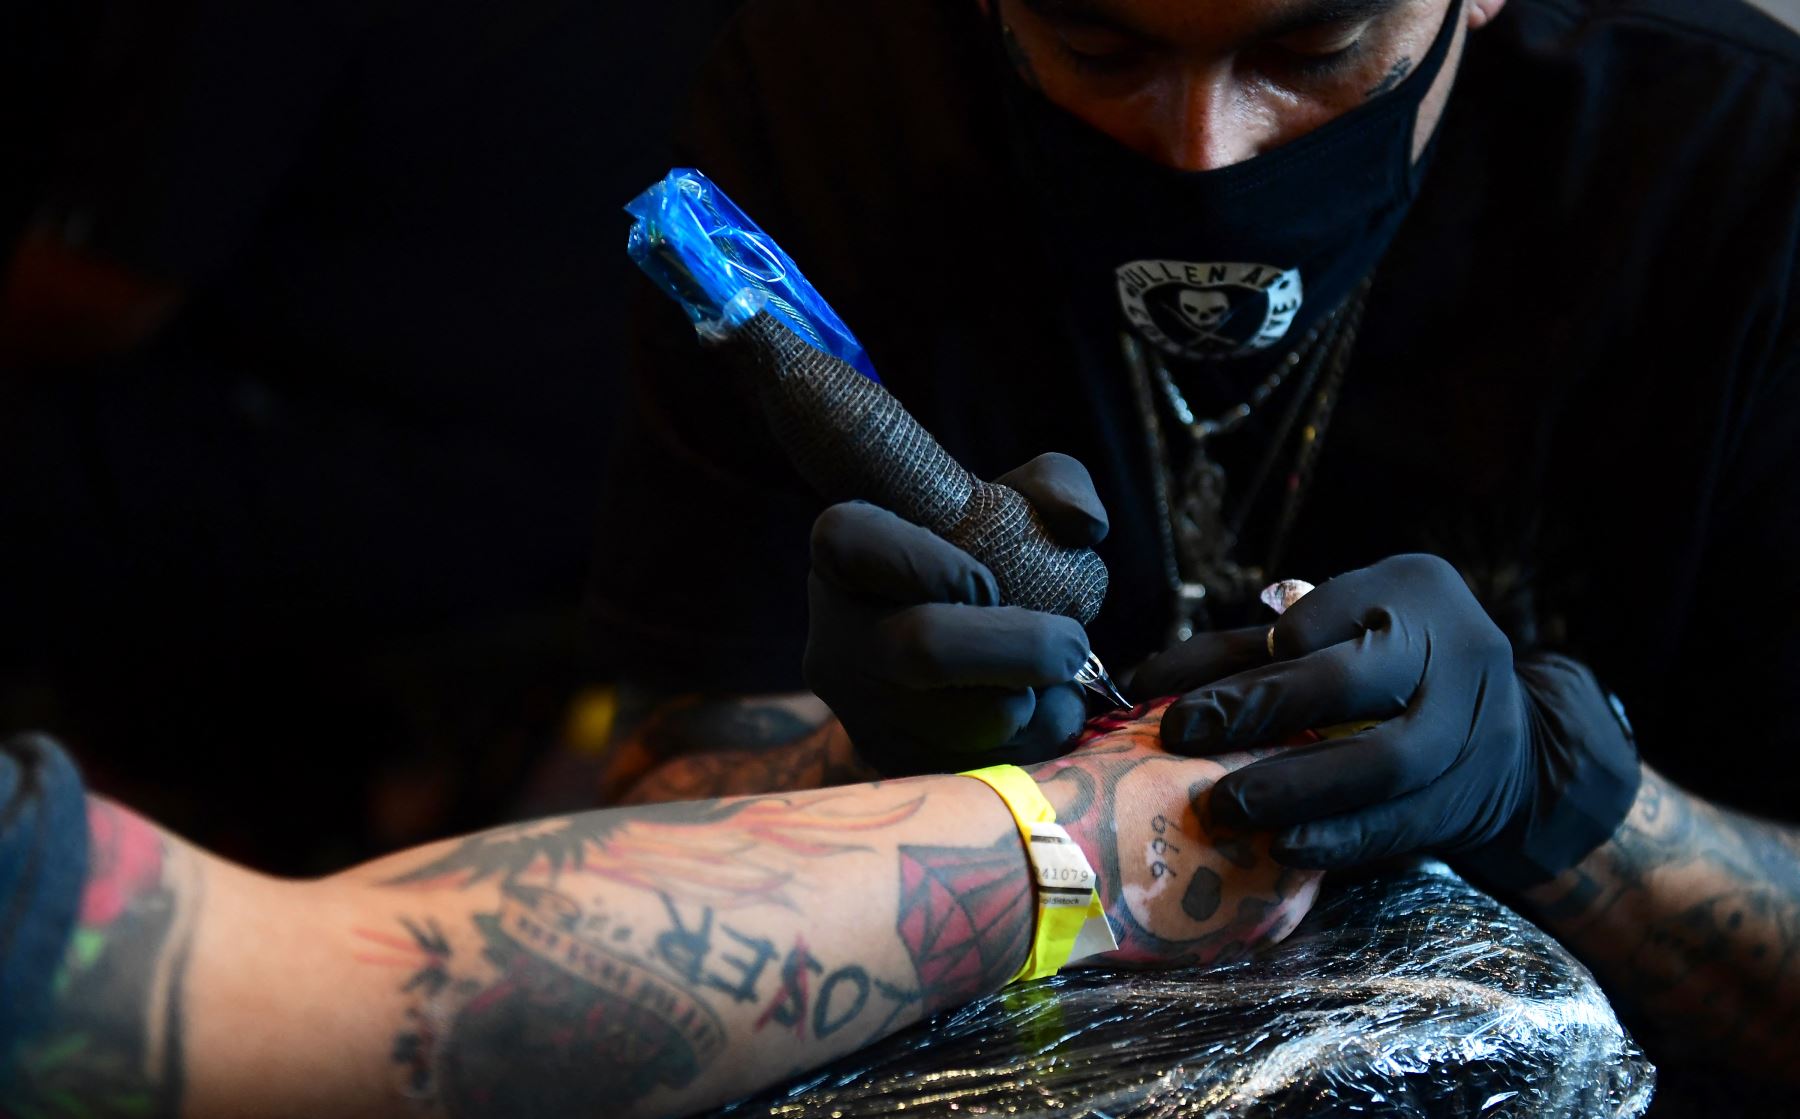 L’Union européenne interdit les produits chimiques nocifs dans les encres de tatouage |  Des nouvelles